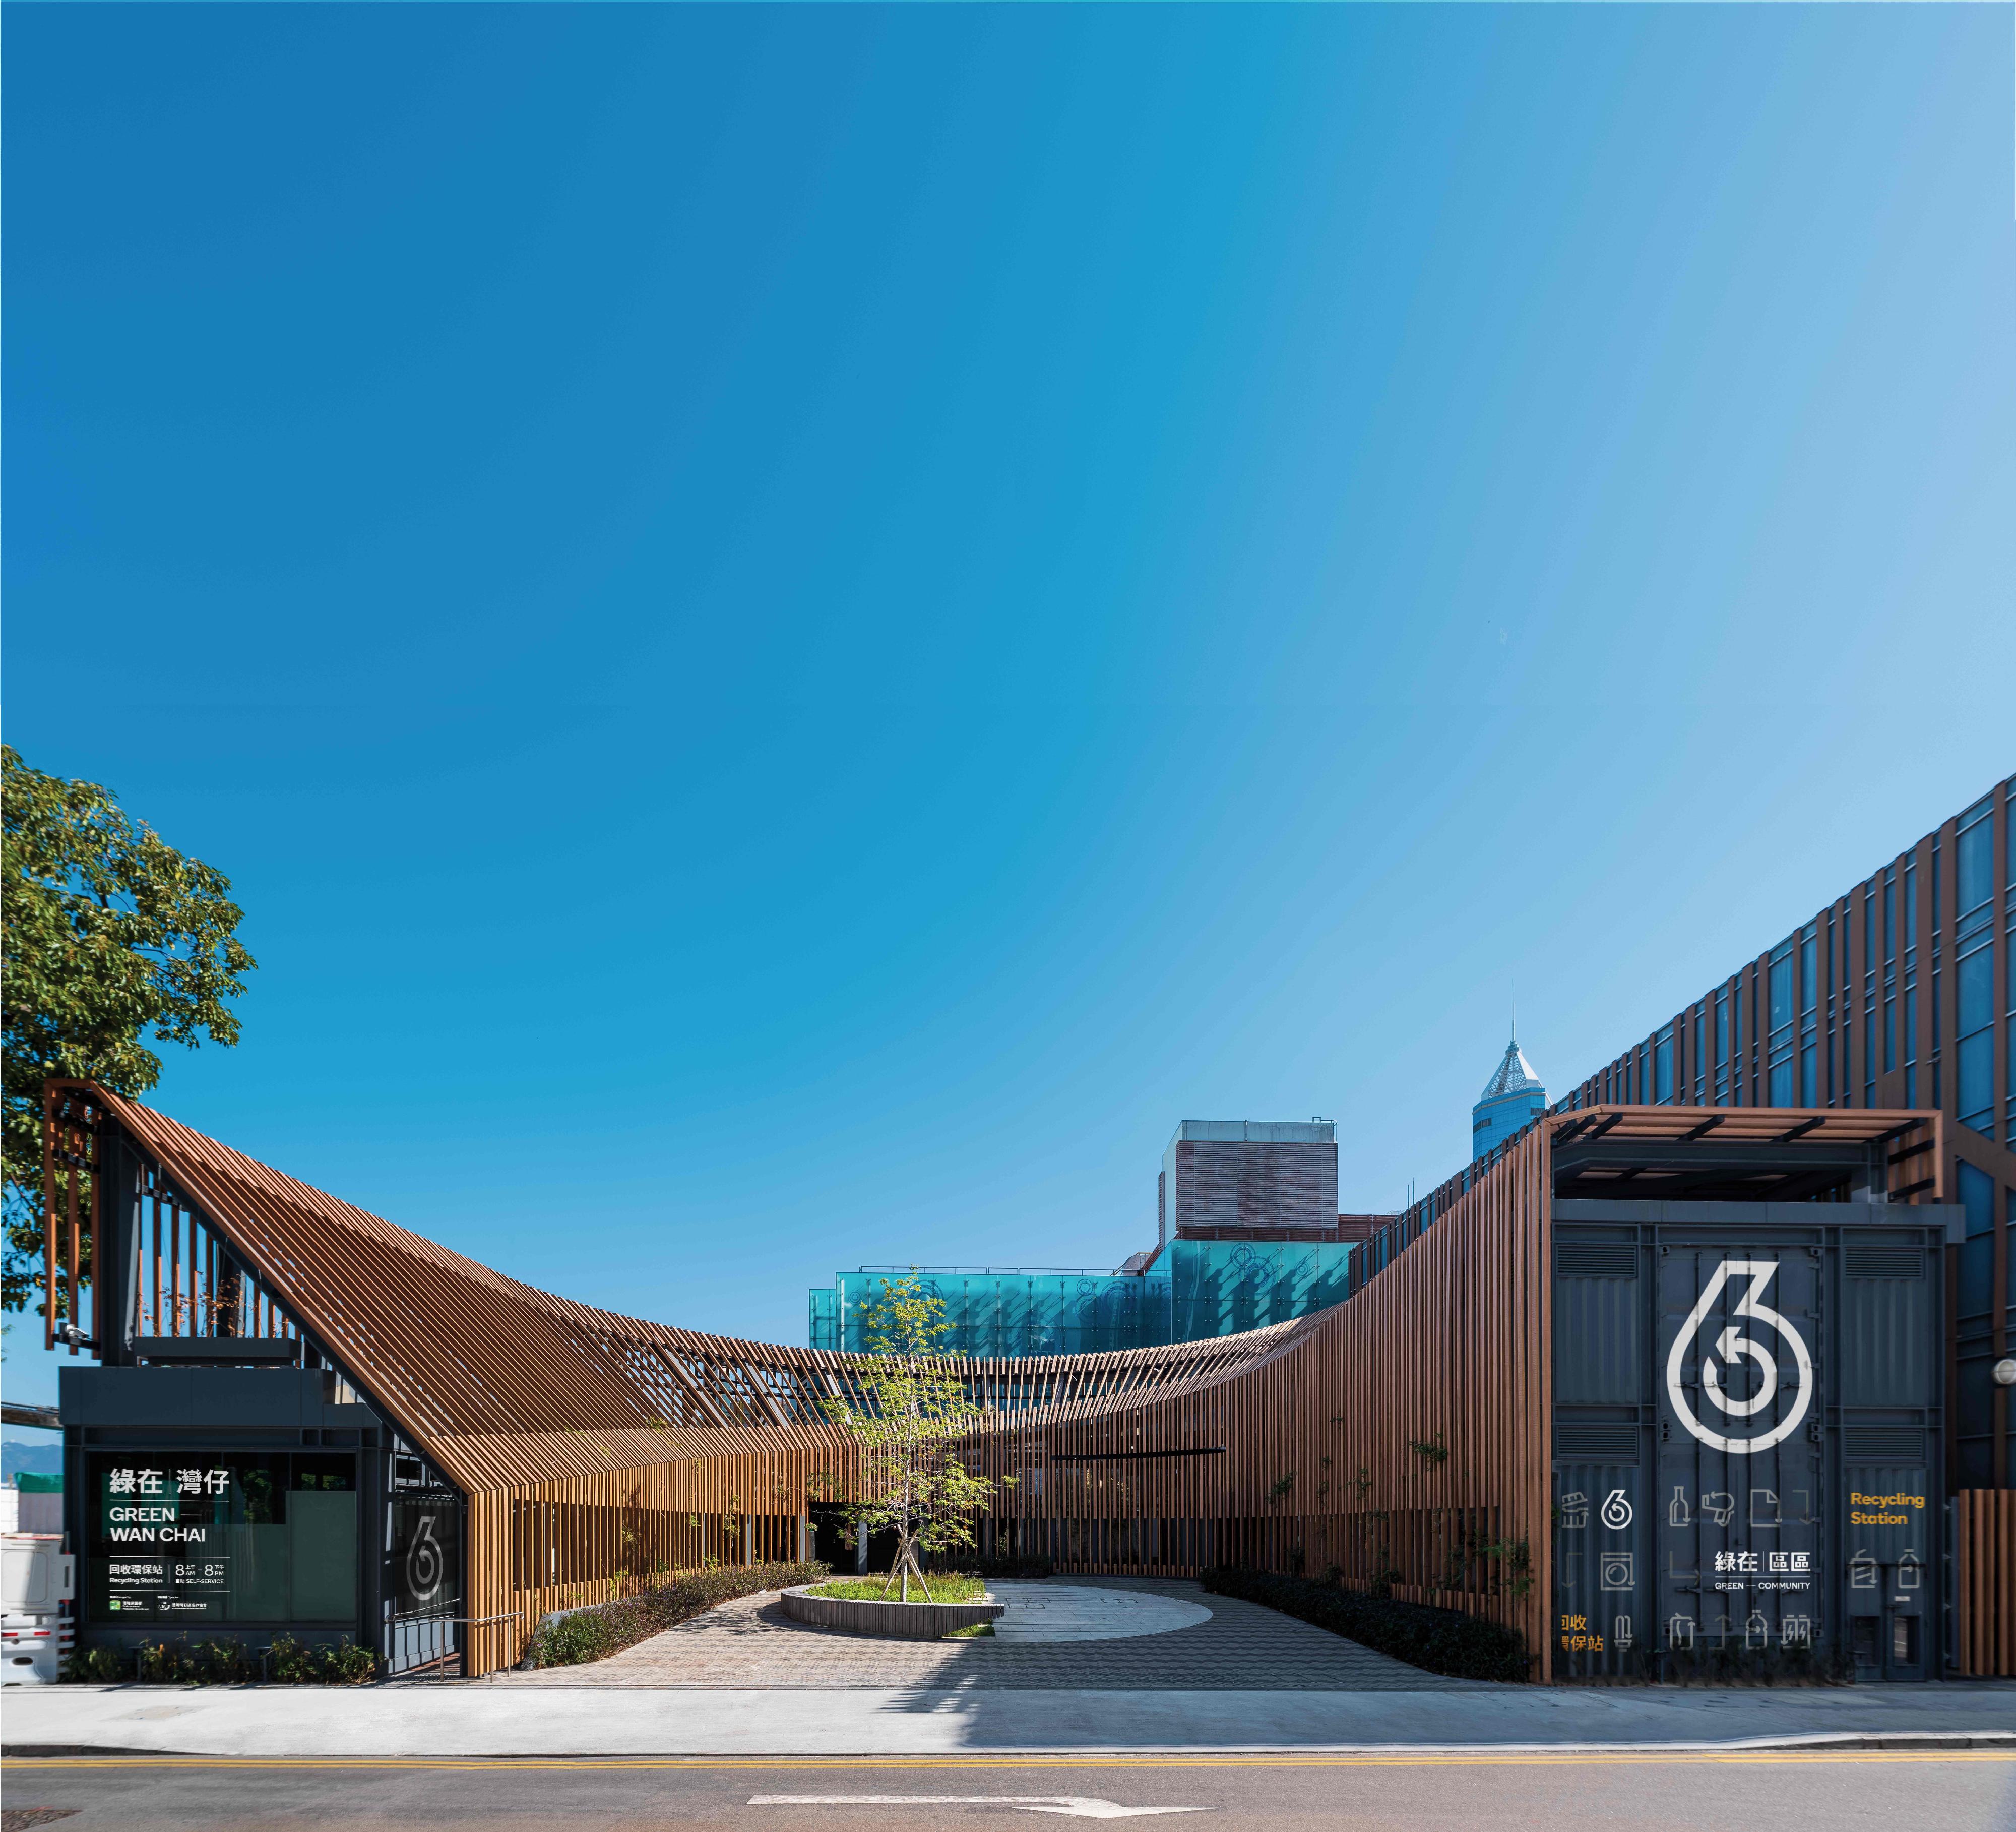 「綠在灣仔」的建築設計連獲殊榮，除了在「2021建築署週年大獎」中獲得優異獎外，近月亦奪得日本「Good Design Award 2021」（優良設計獎2021），設計融合四周環境，推廣綠色文化。